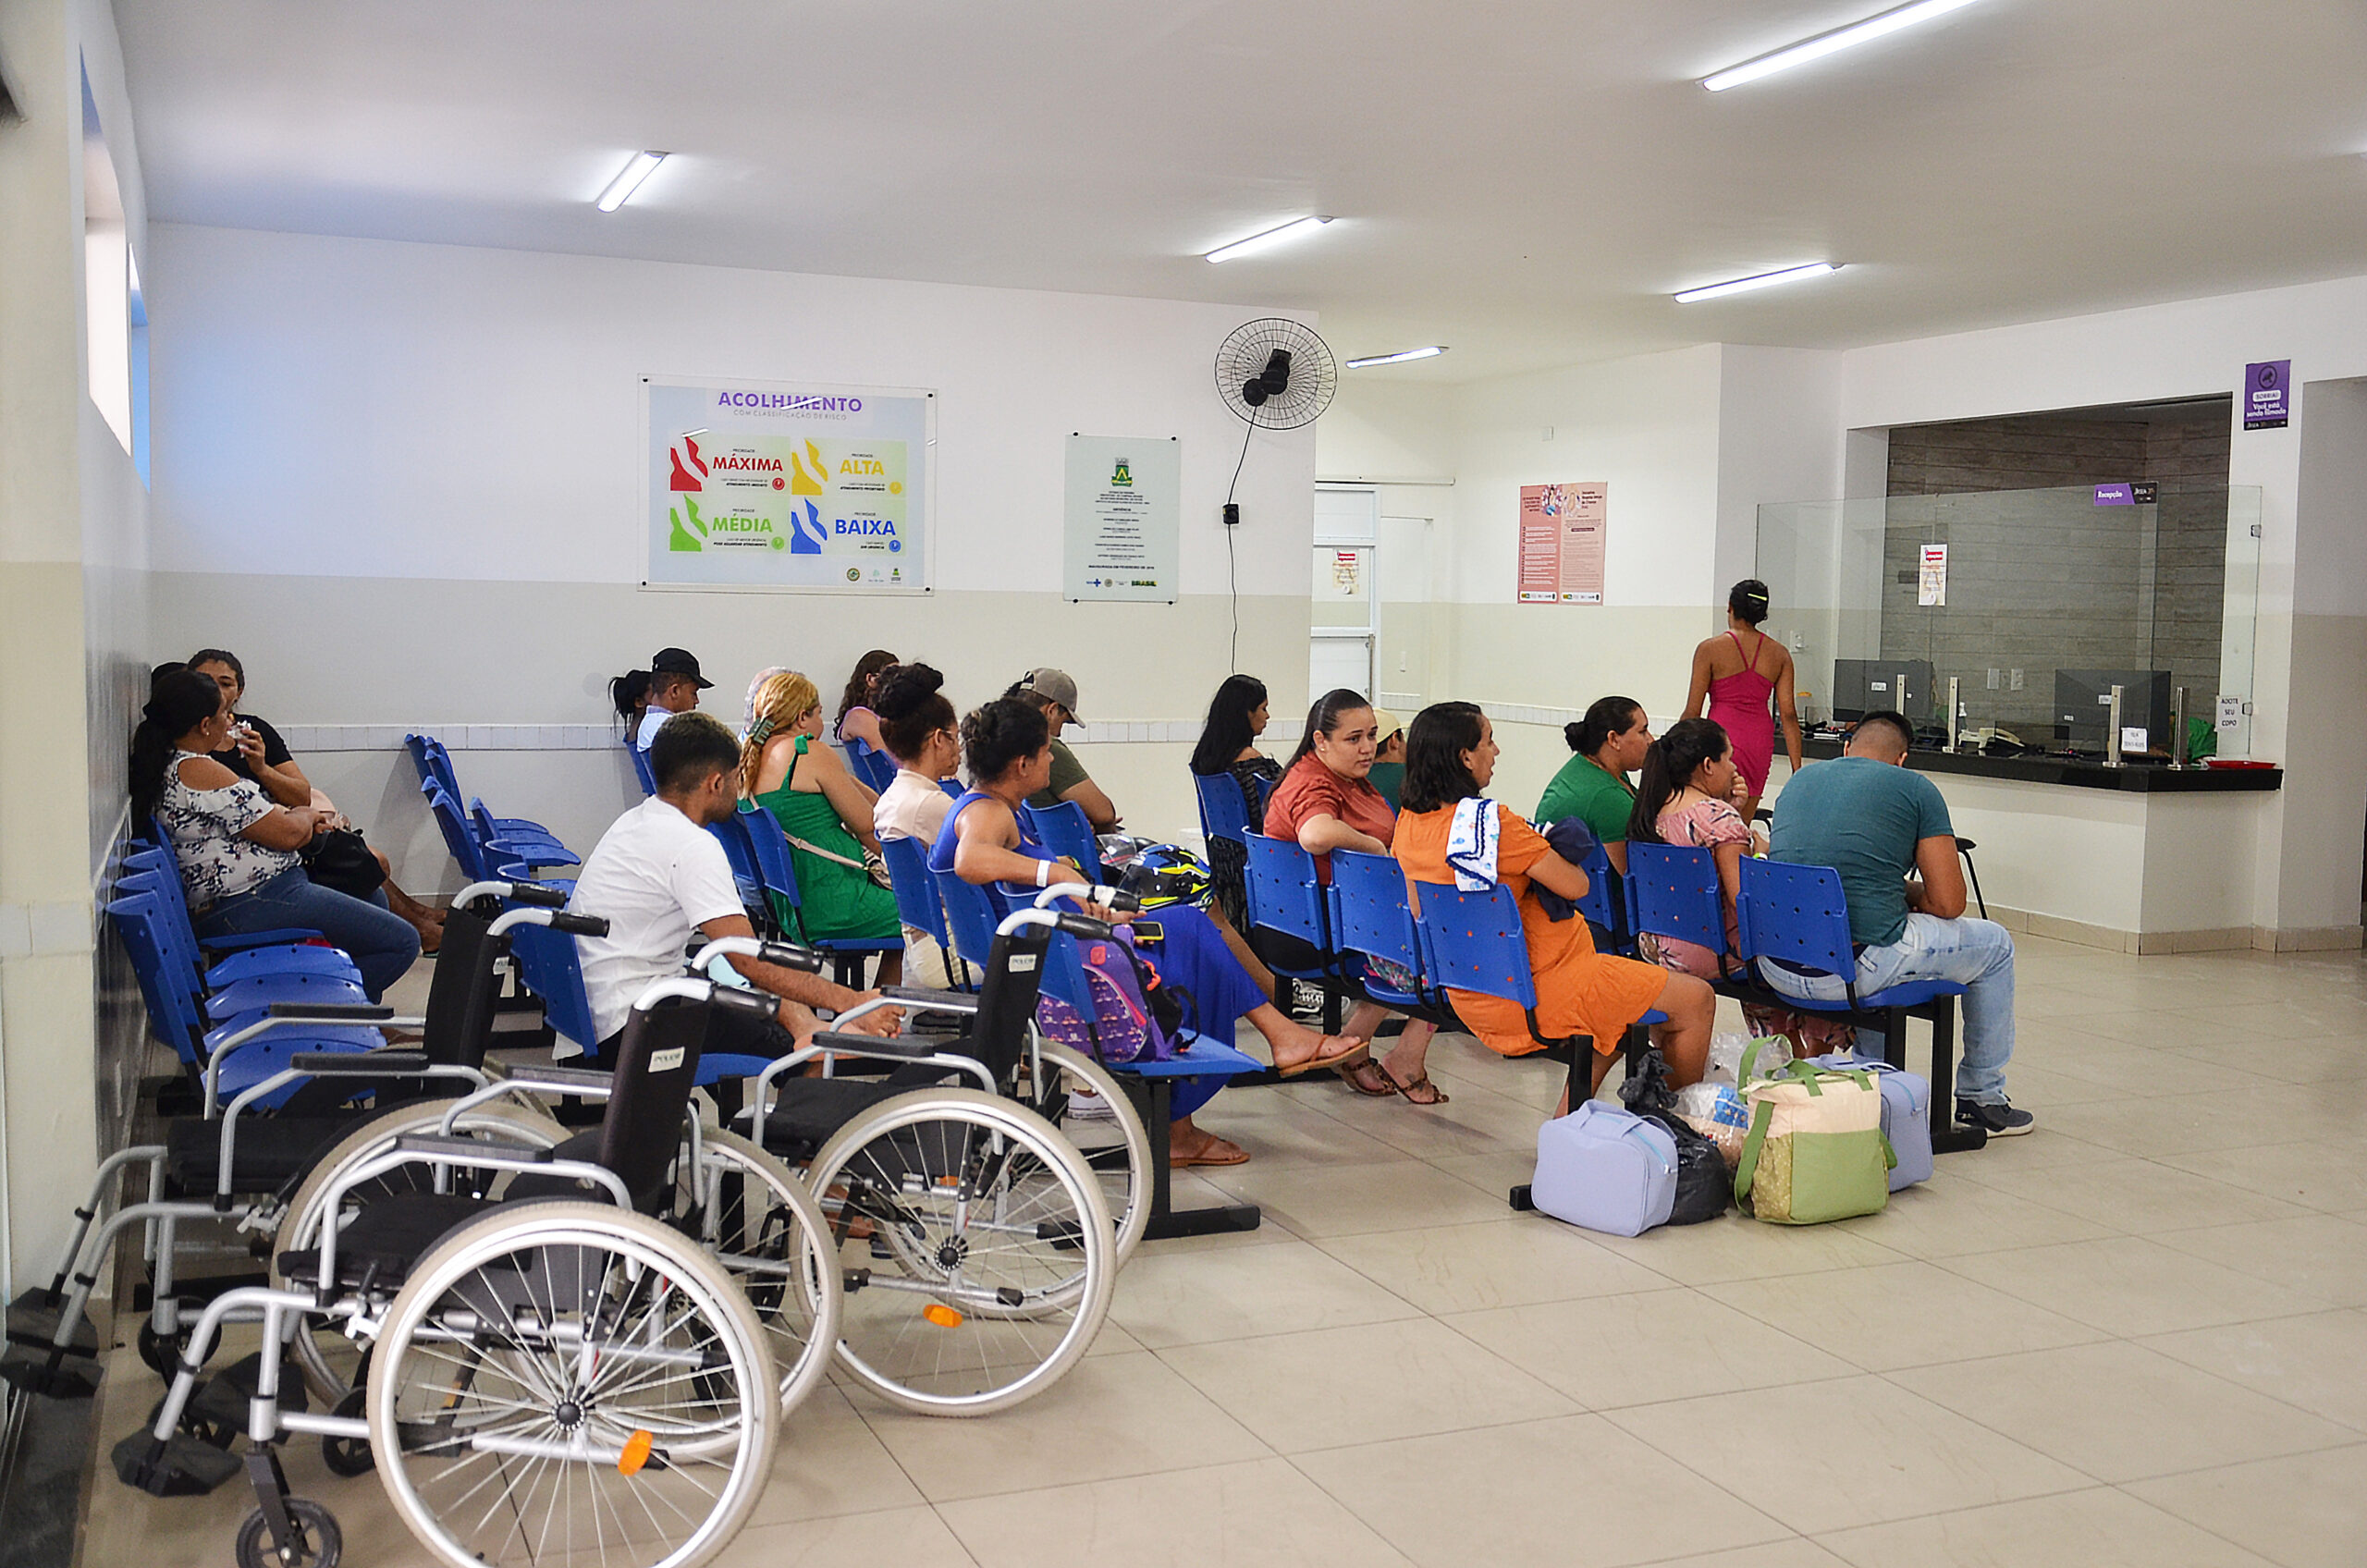 Recepção de maternidade com gestantes sentadas e cadeiras de roda.